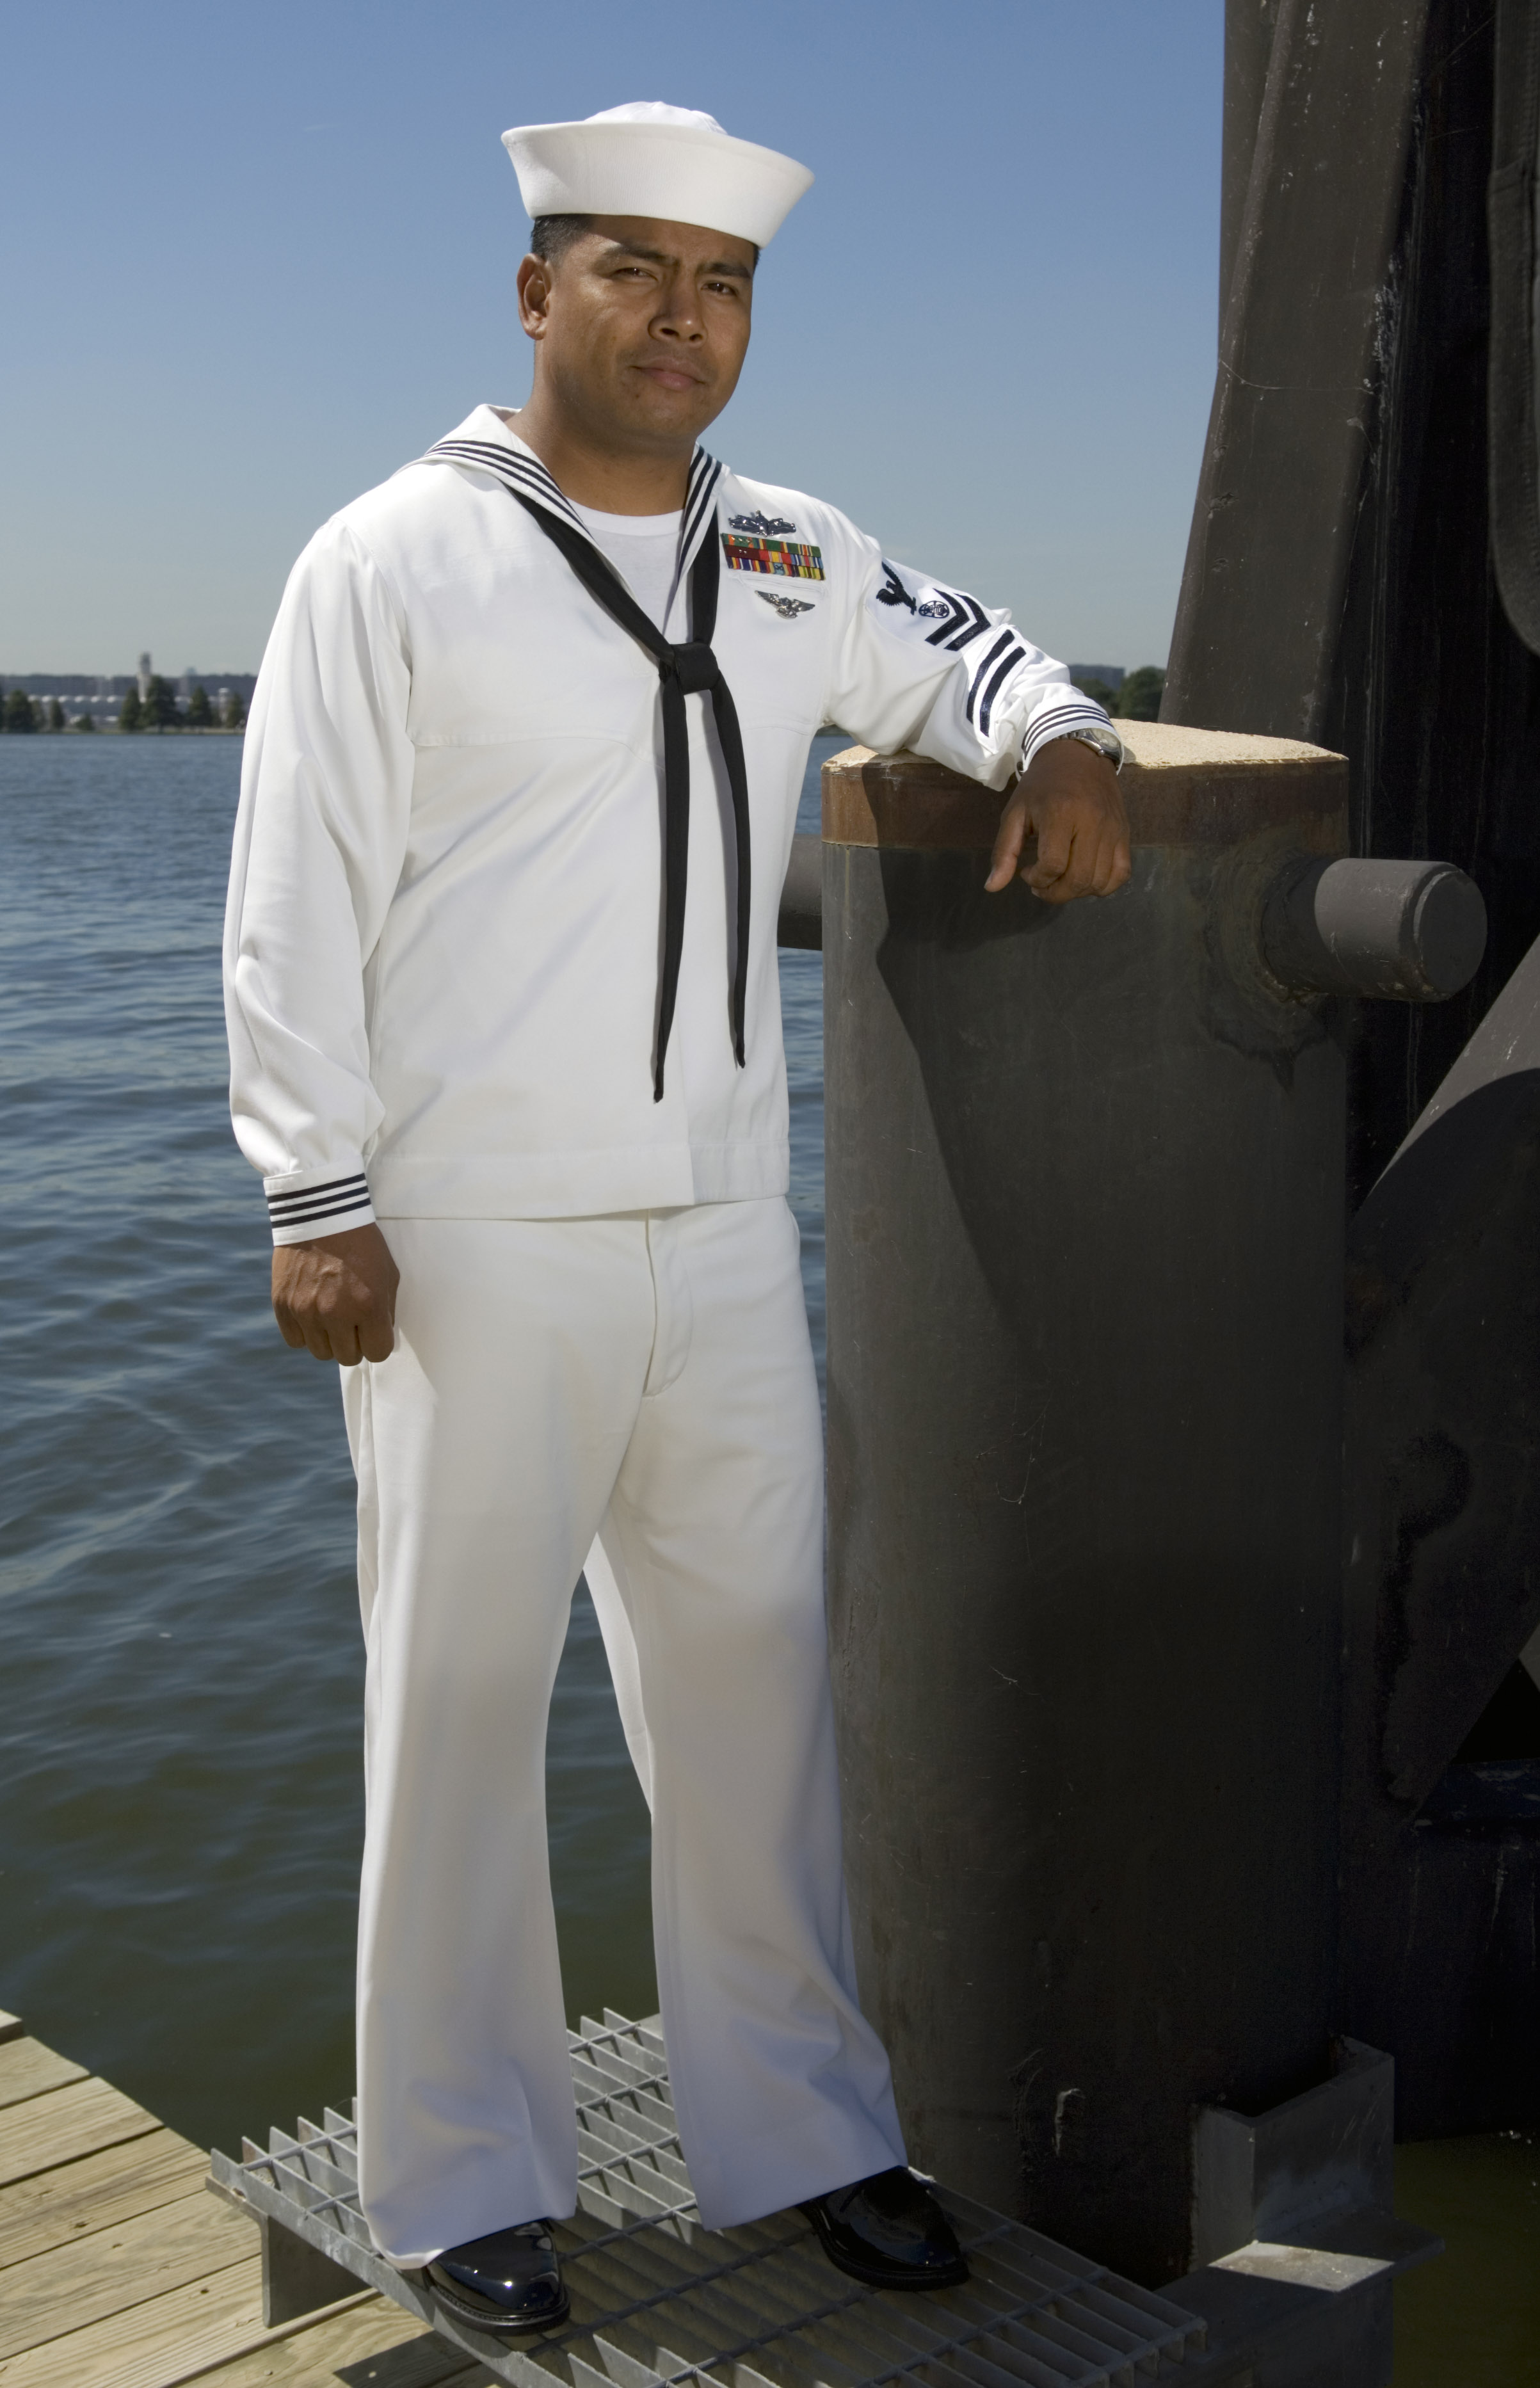 Seaman in Whites